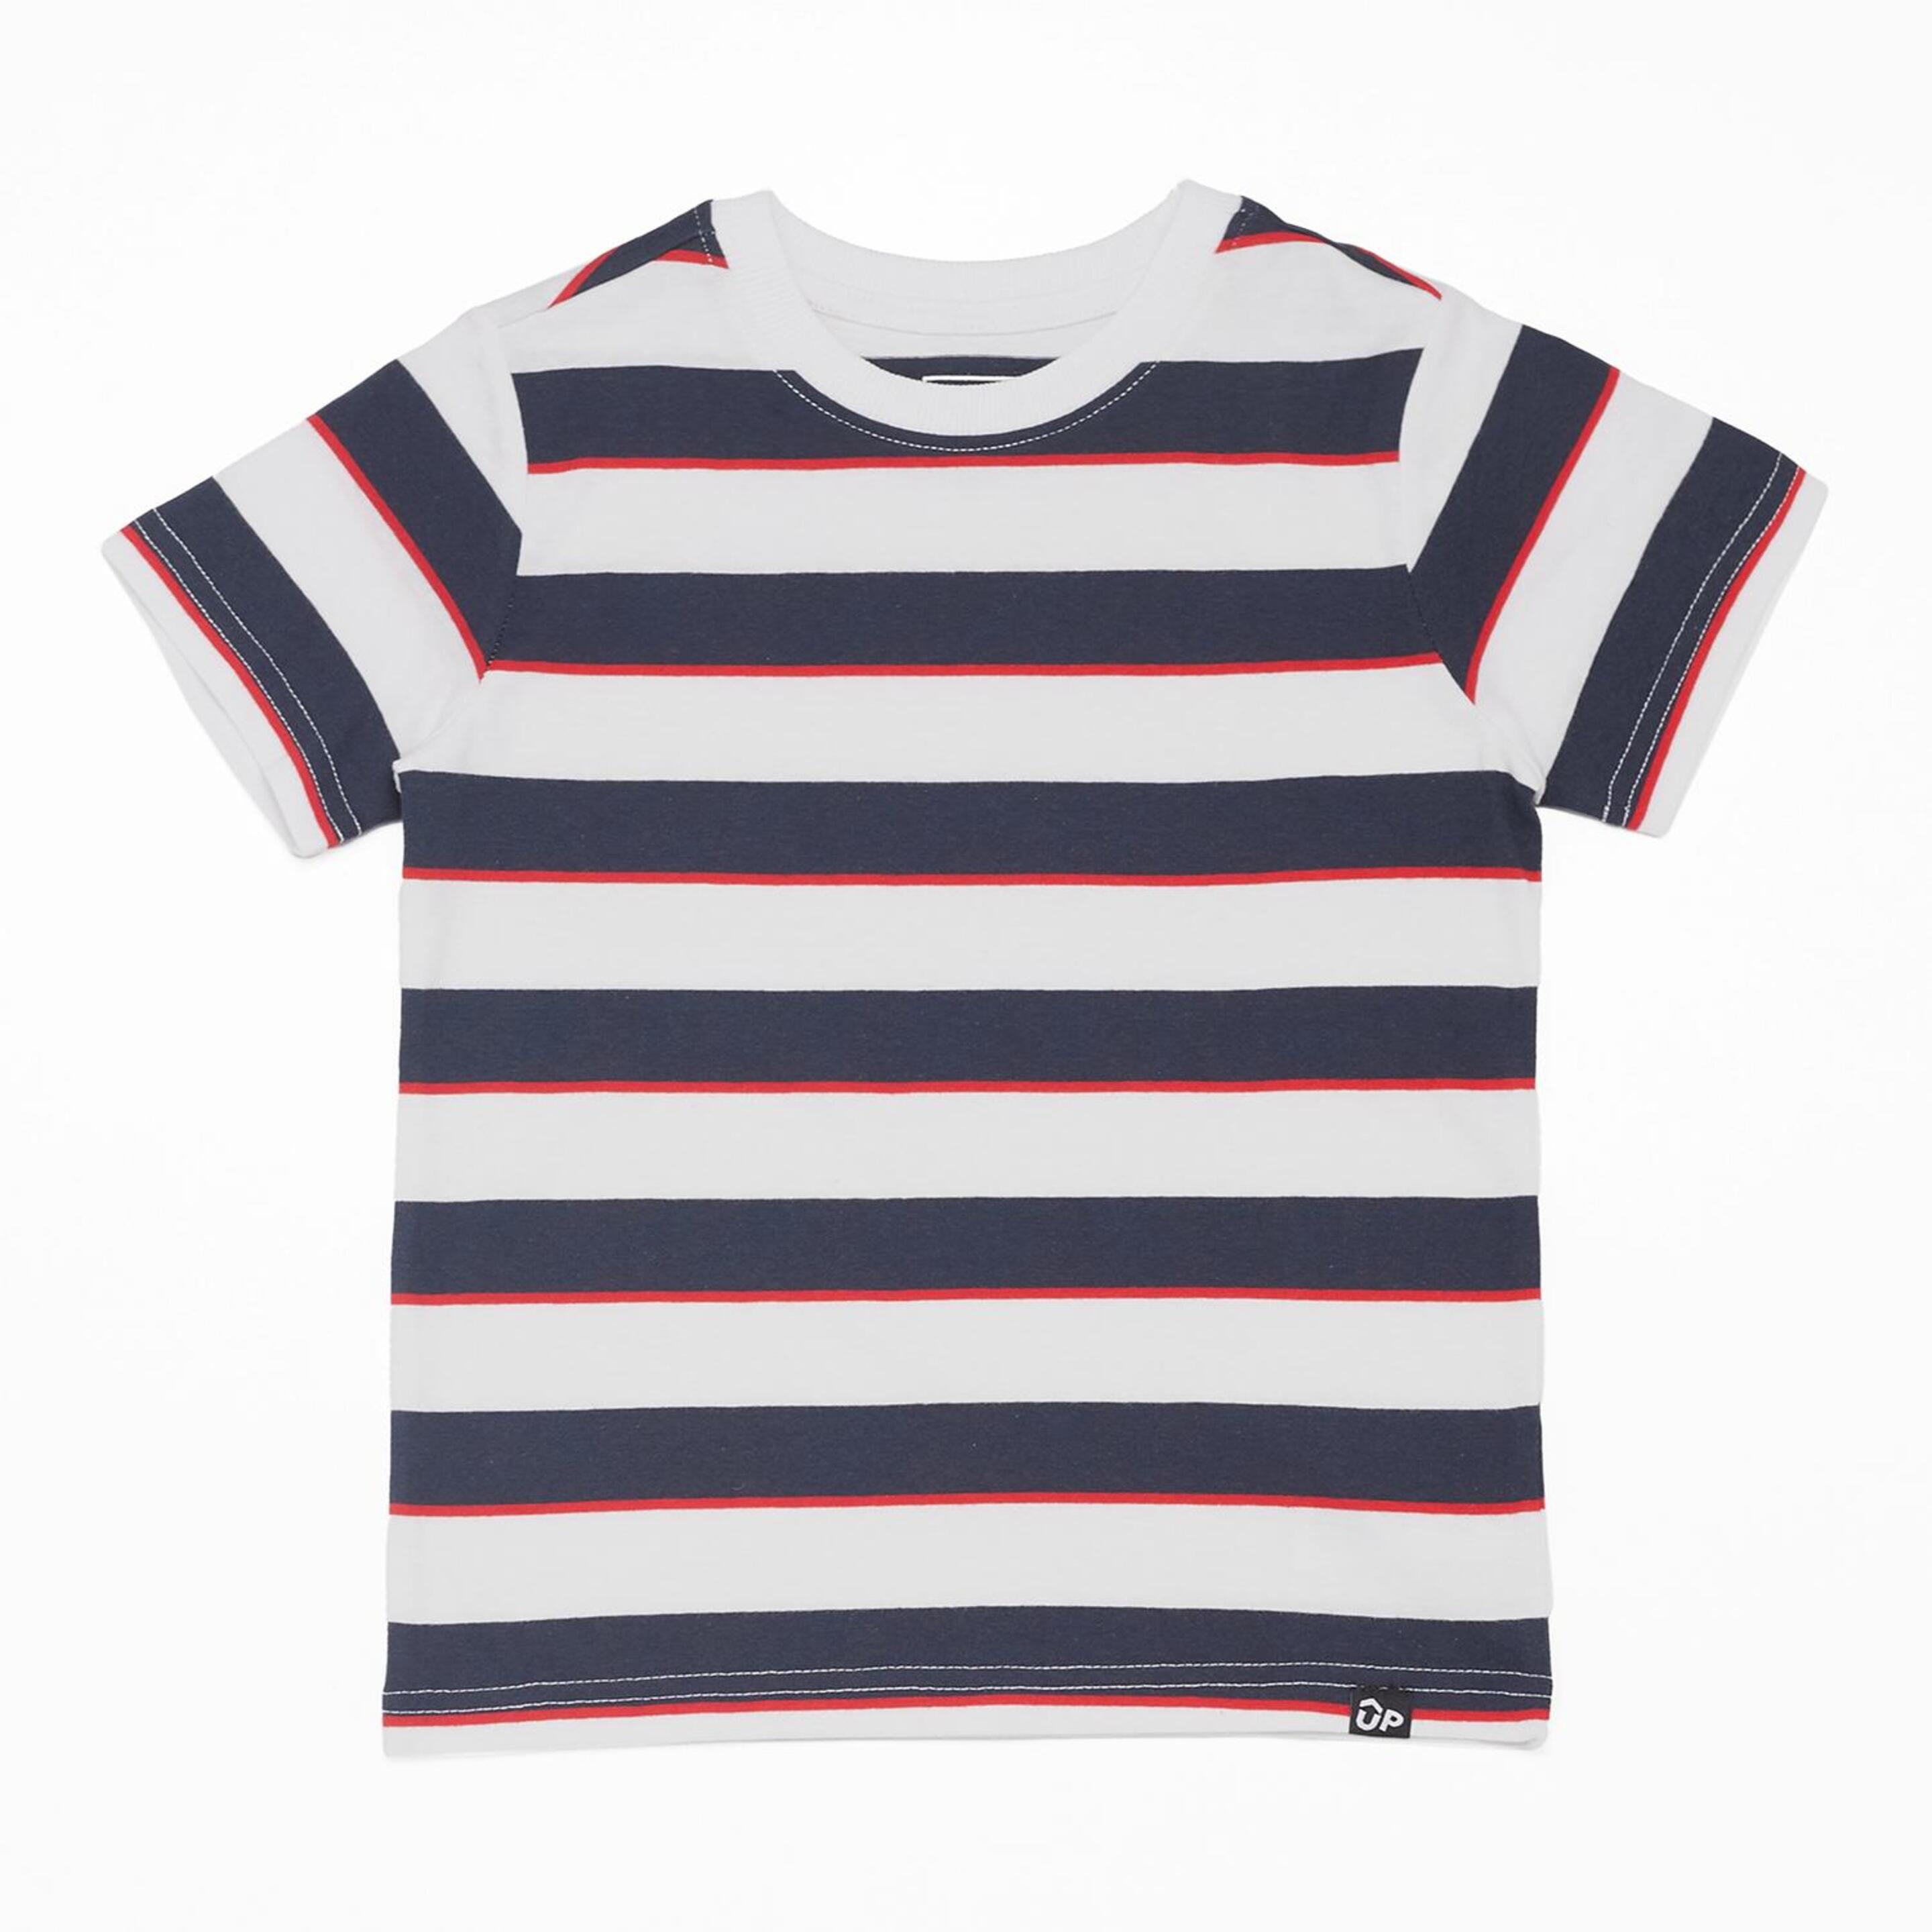 Up Basic - Marino - Camiseta Niño